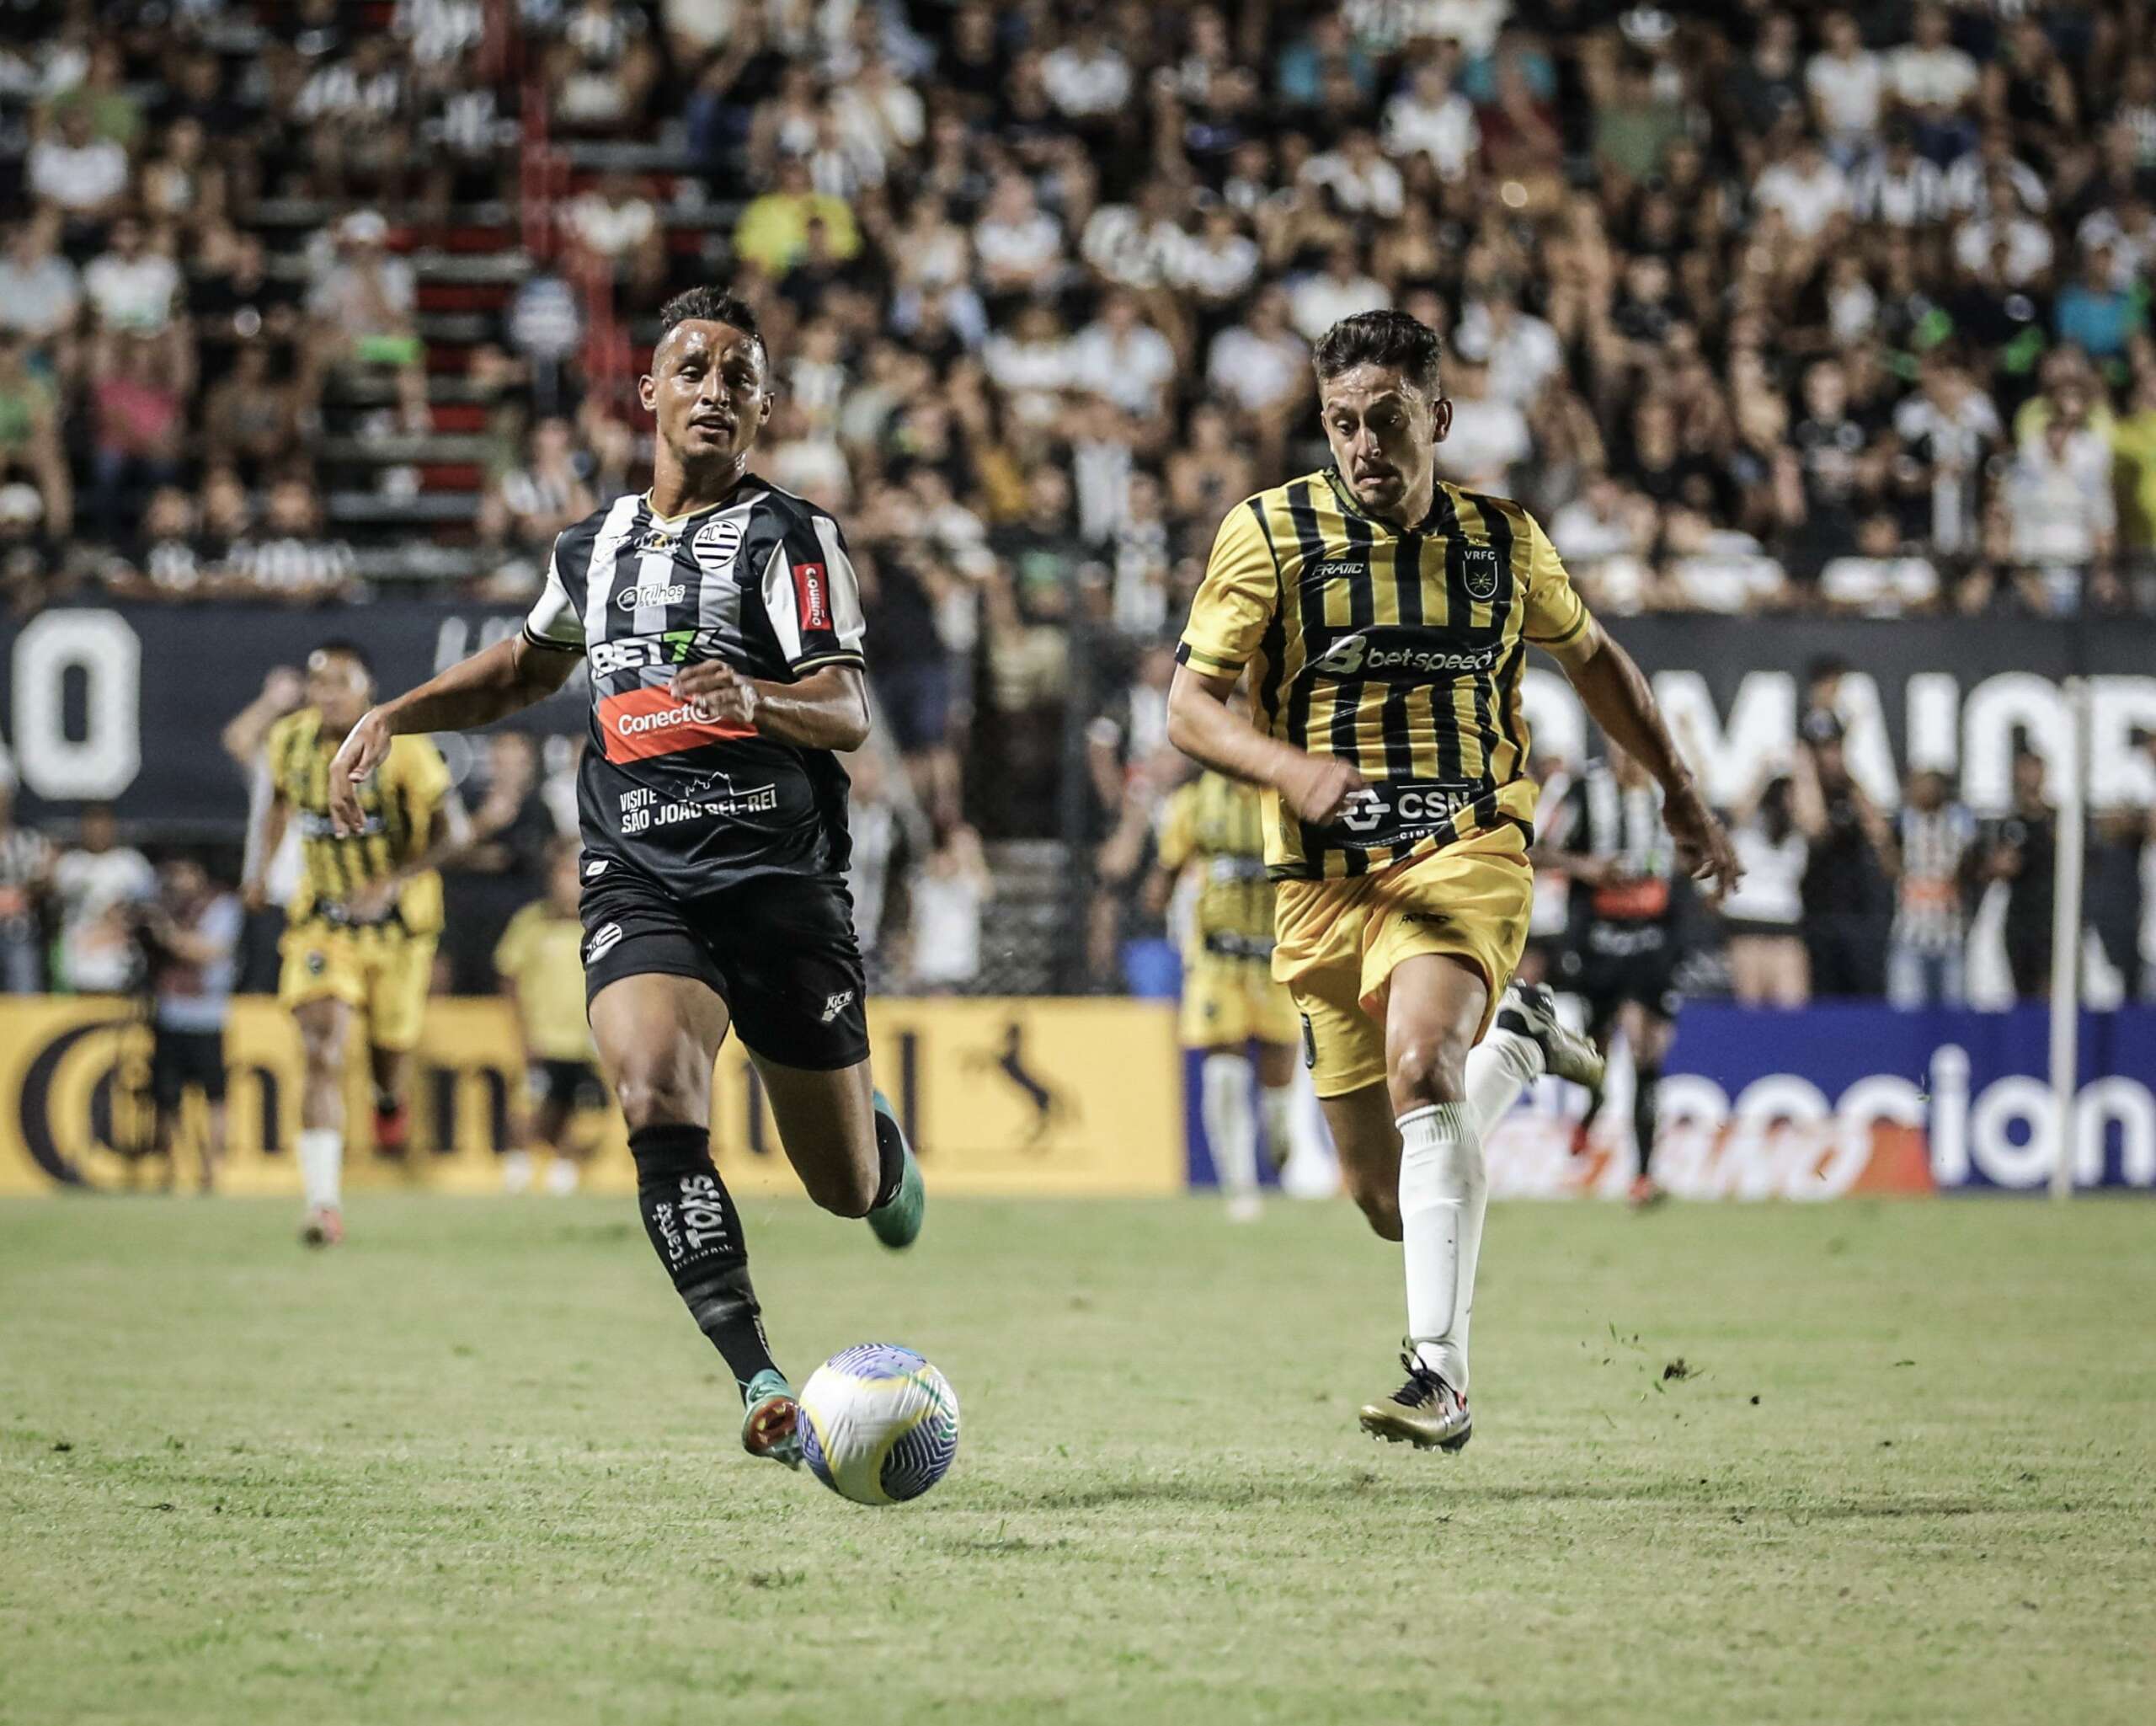 Athletic-MG 1 x 0 Volta Redonda-RJ – Esquadrão avança na Copa do Brasil logo na 2ª participação